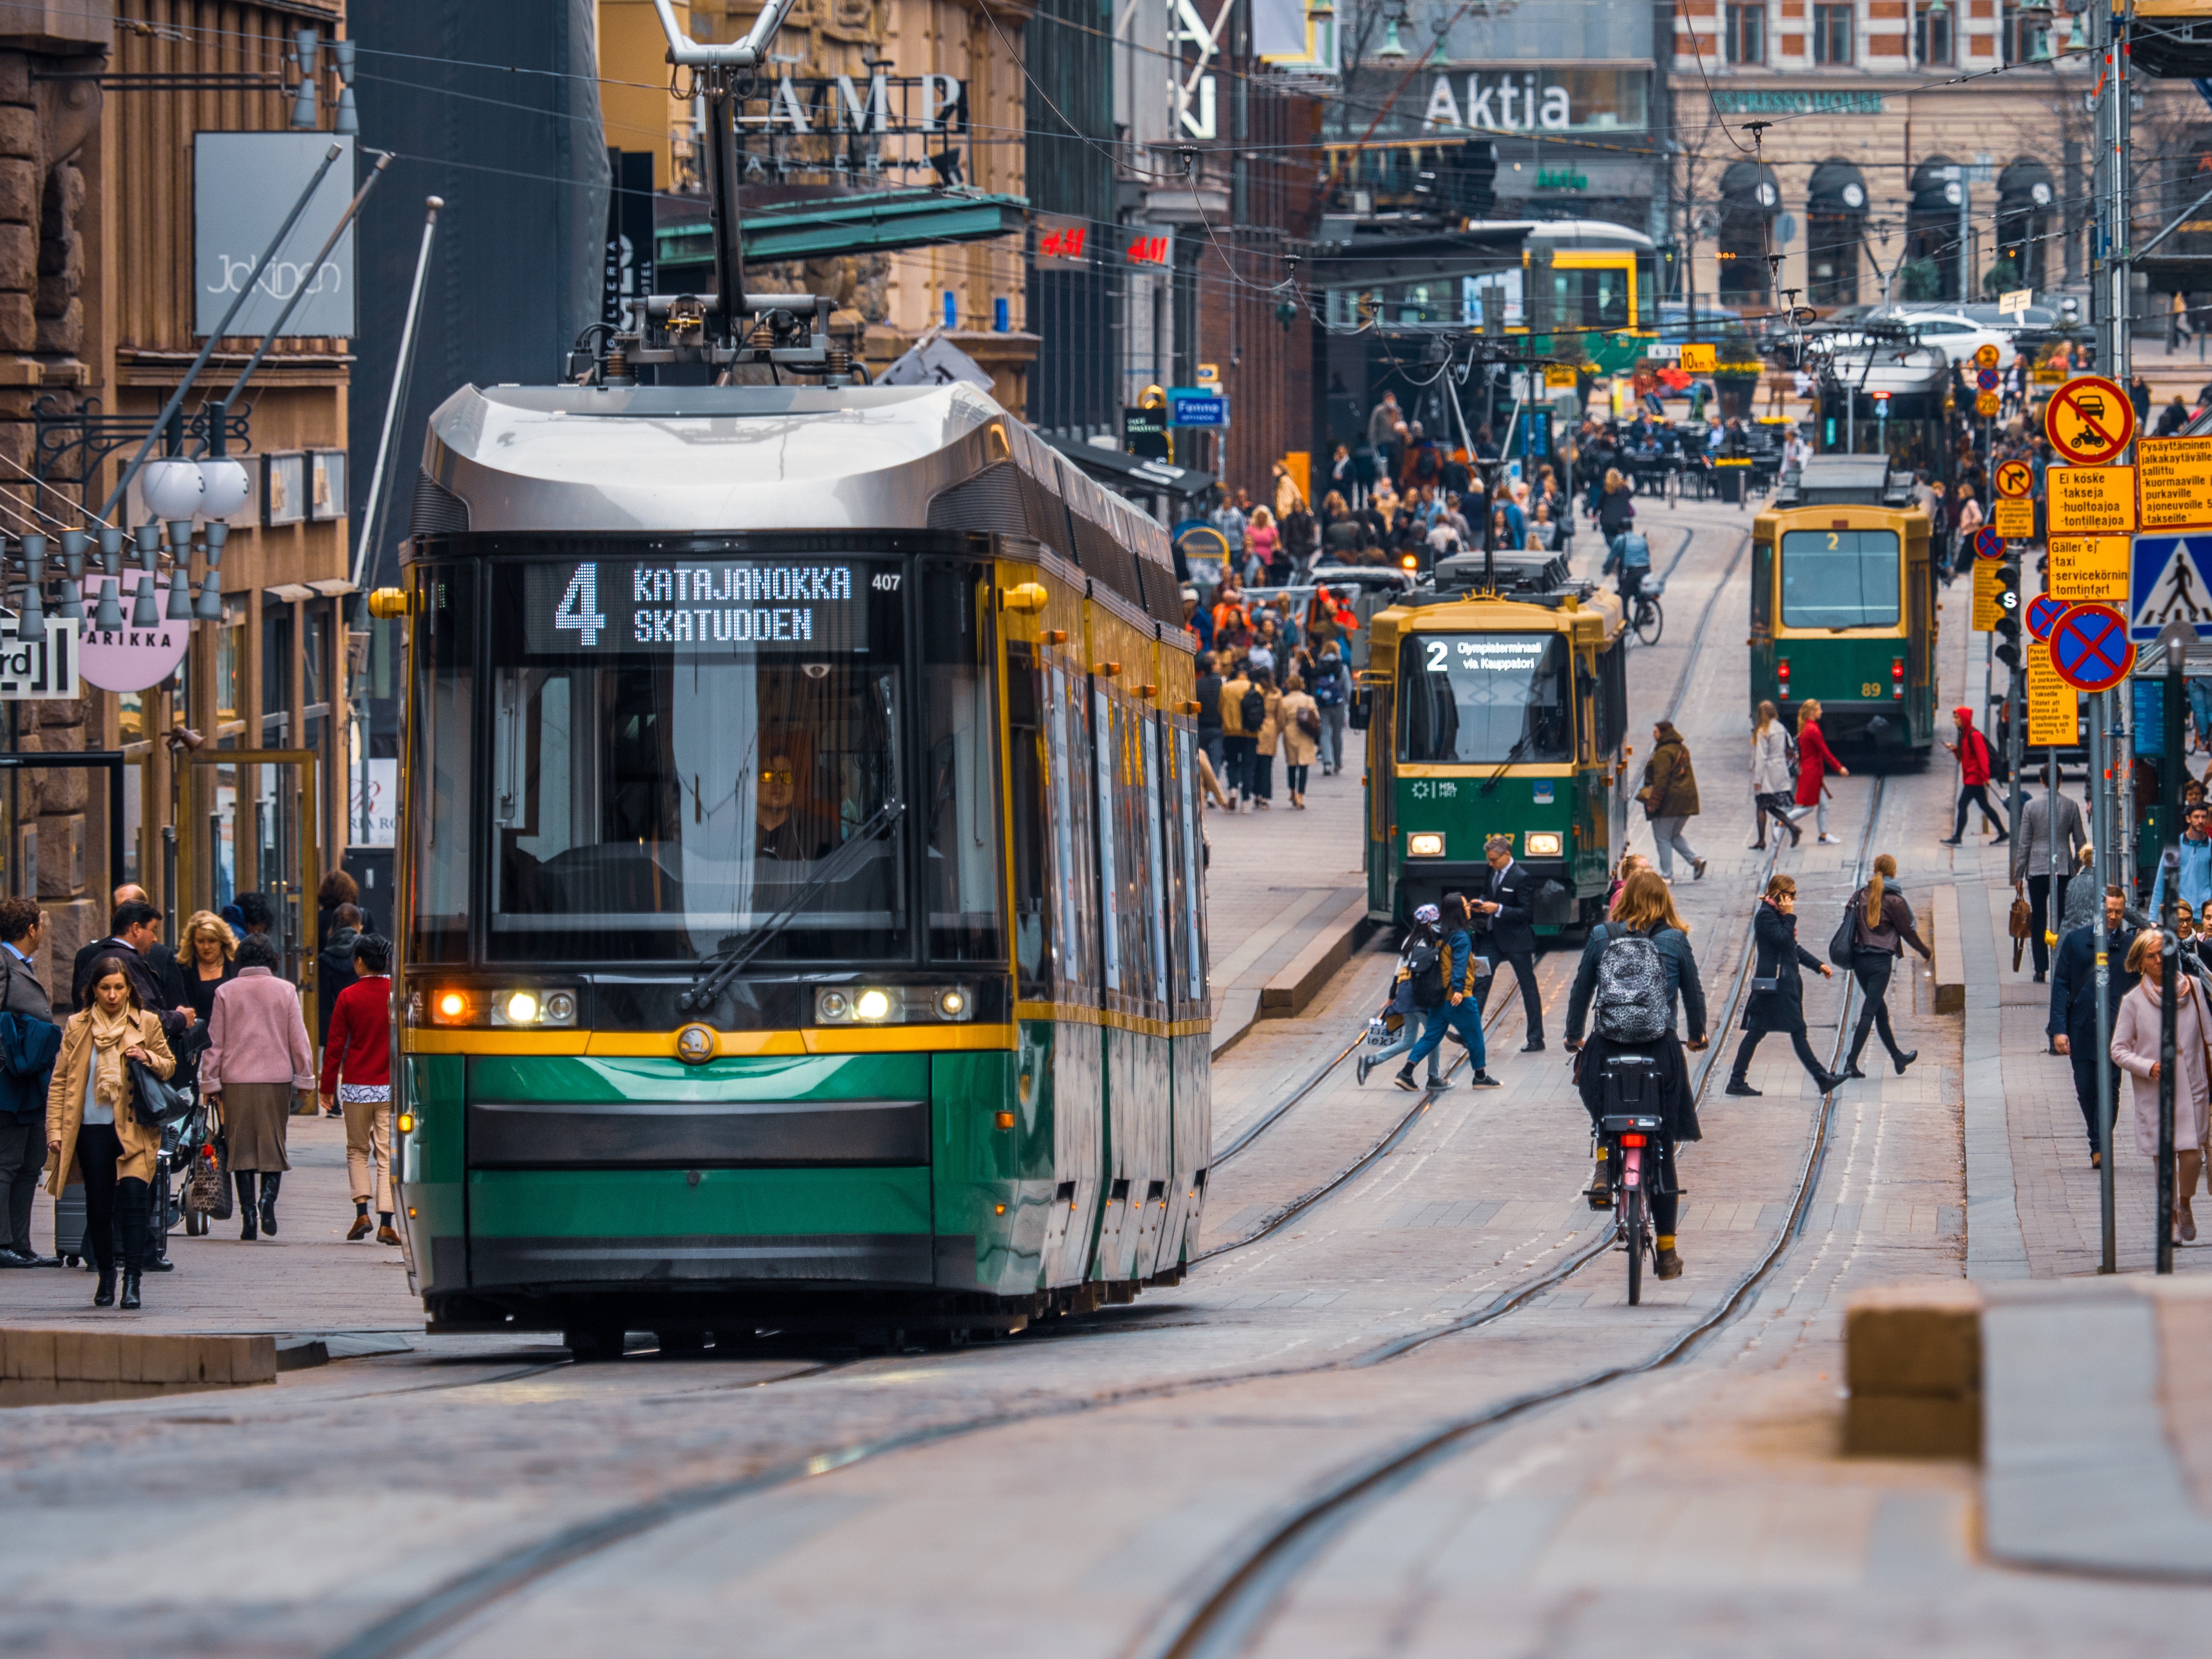 Trams and people walking and biking on a street in Helsinki